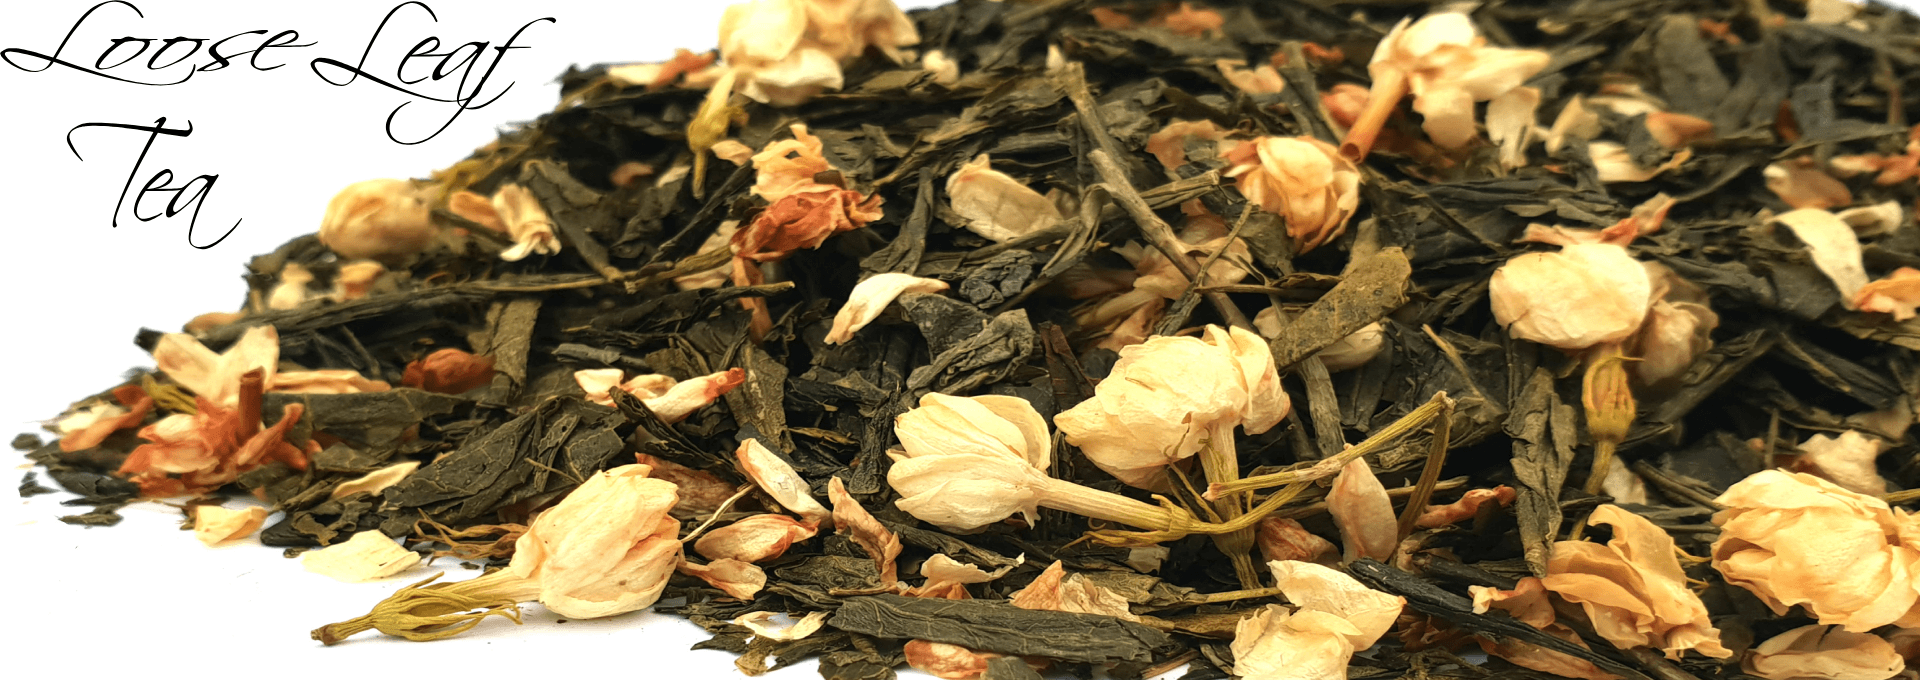 loose leaf Tea